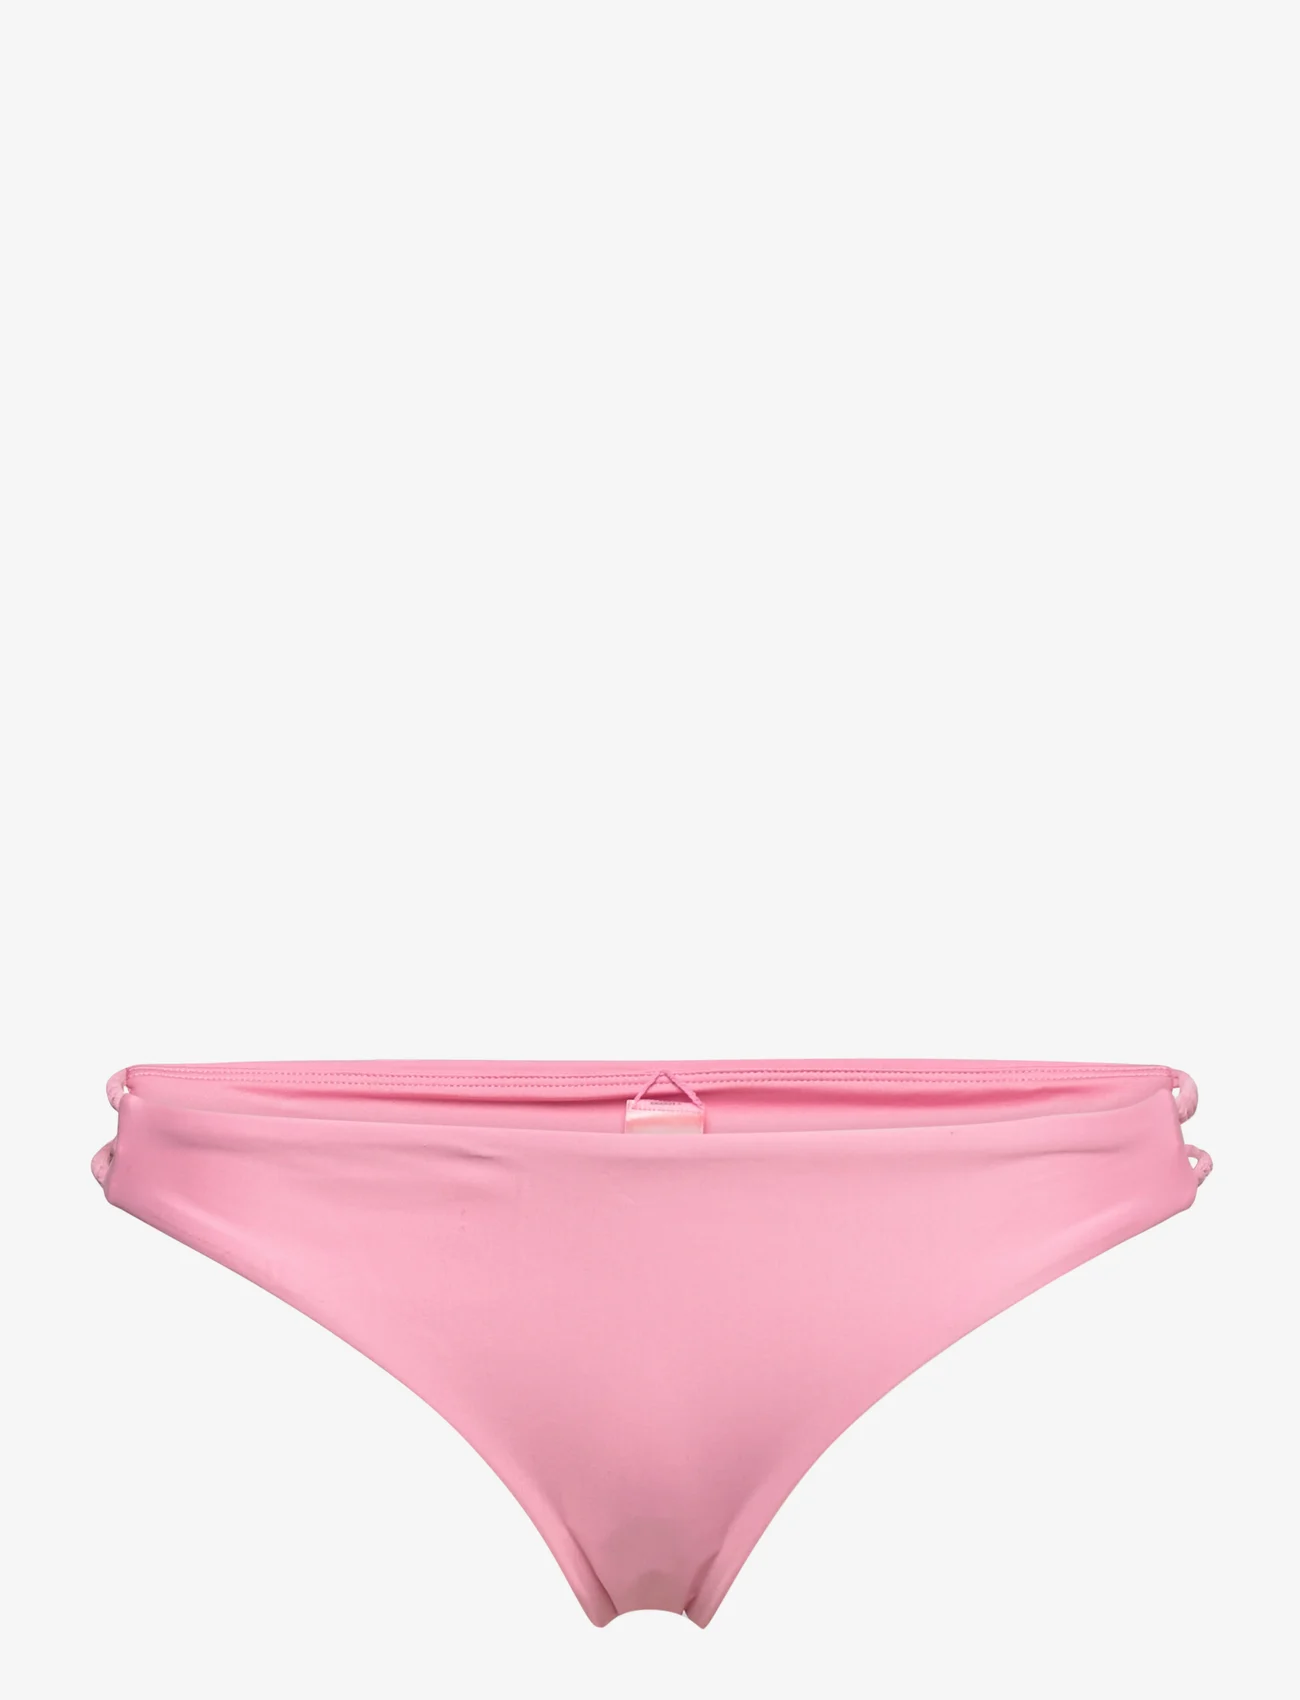 Hunkemöller - Aruba brazilian r - bikinibriefs - sea pink - 0